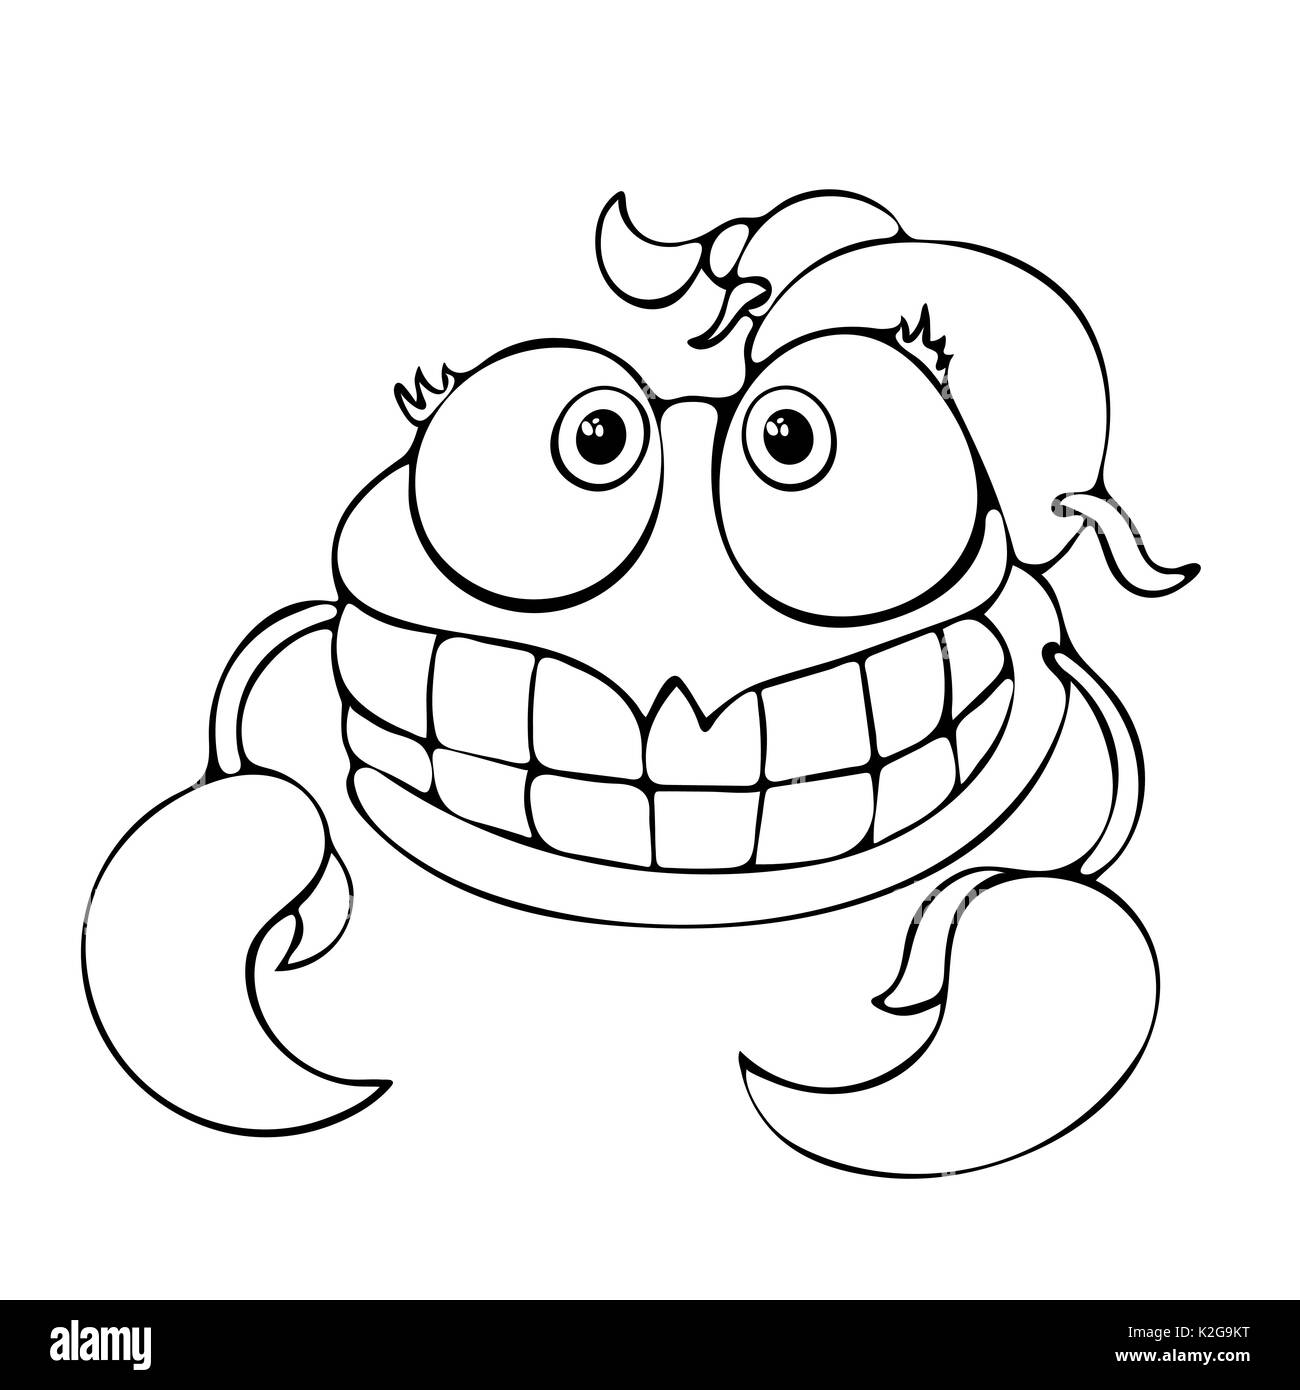 Funny Cartoon livre à colorier pour scorpion isolé sur fond blanc, noir et blanc scénario dessin à la main, monochrome Illustration de Vecteur